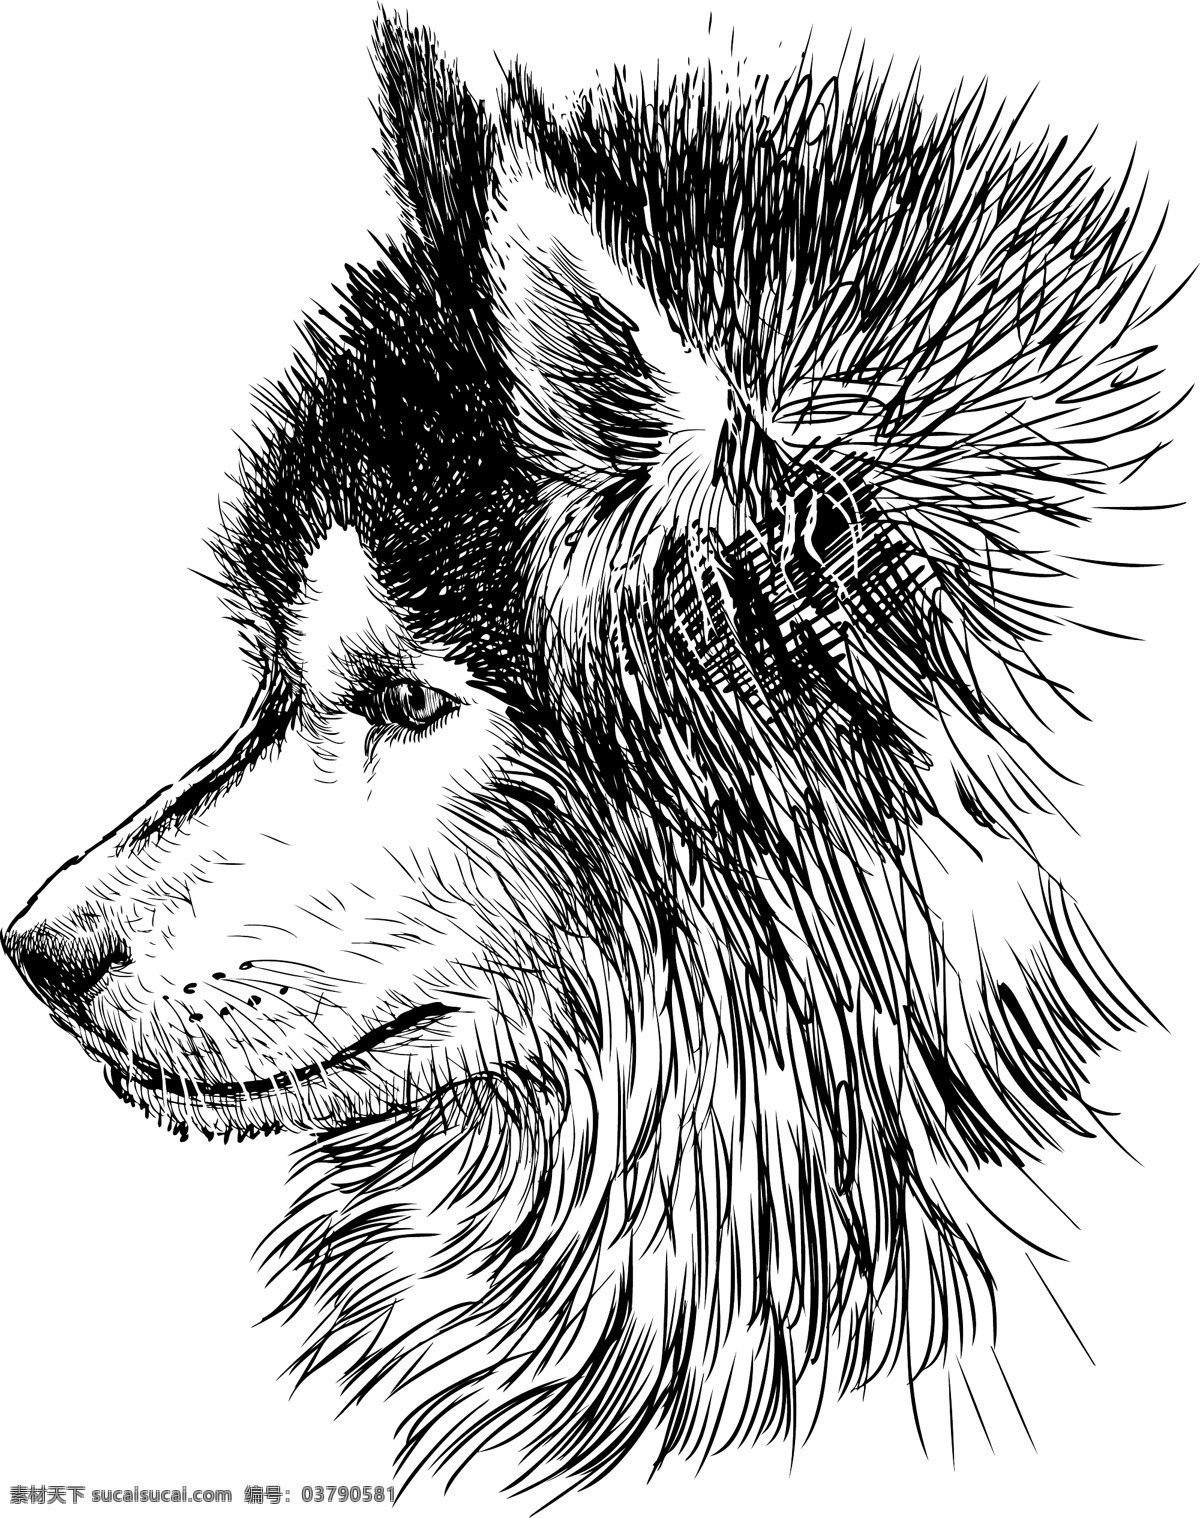 野狼 狼 矢量的苍狼 狼王 霸气 生猛 凶猛 凶猛动物 动物 素描 手绘狼 哺乳动物 食肉动物 凶猛的狼 山狼 矢量凶猛的狼 野生动物 轮廓 生物世界 矢量